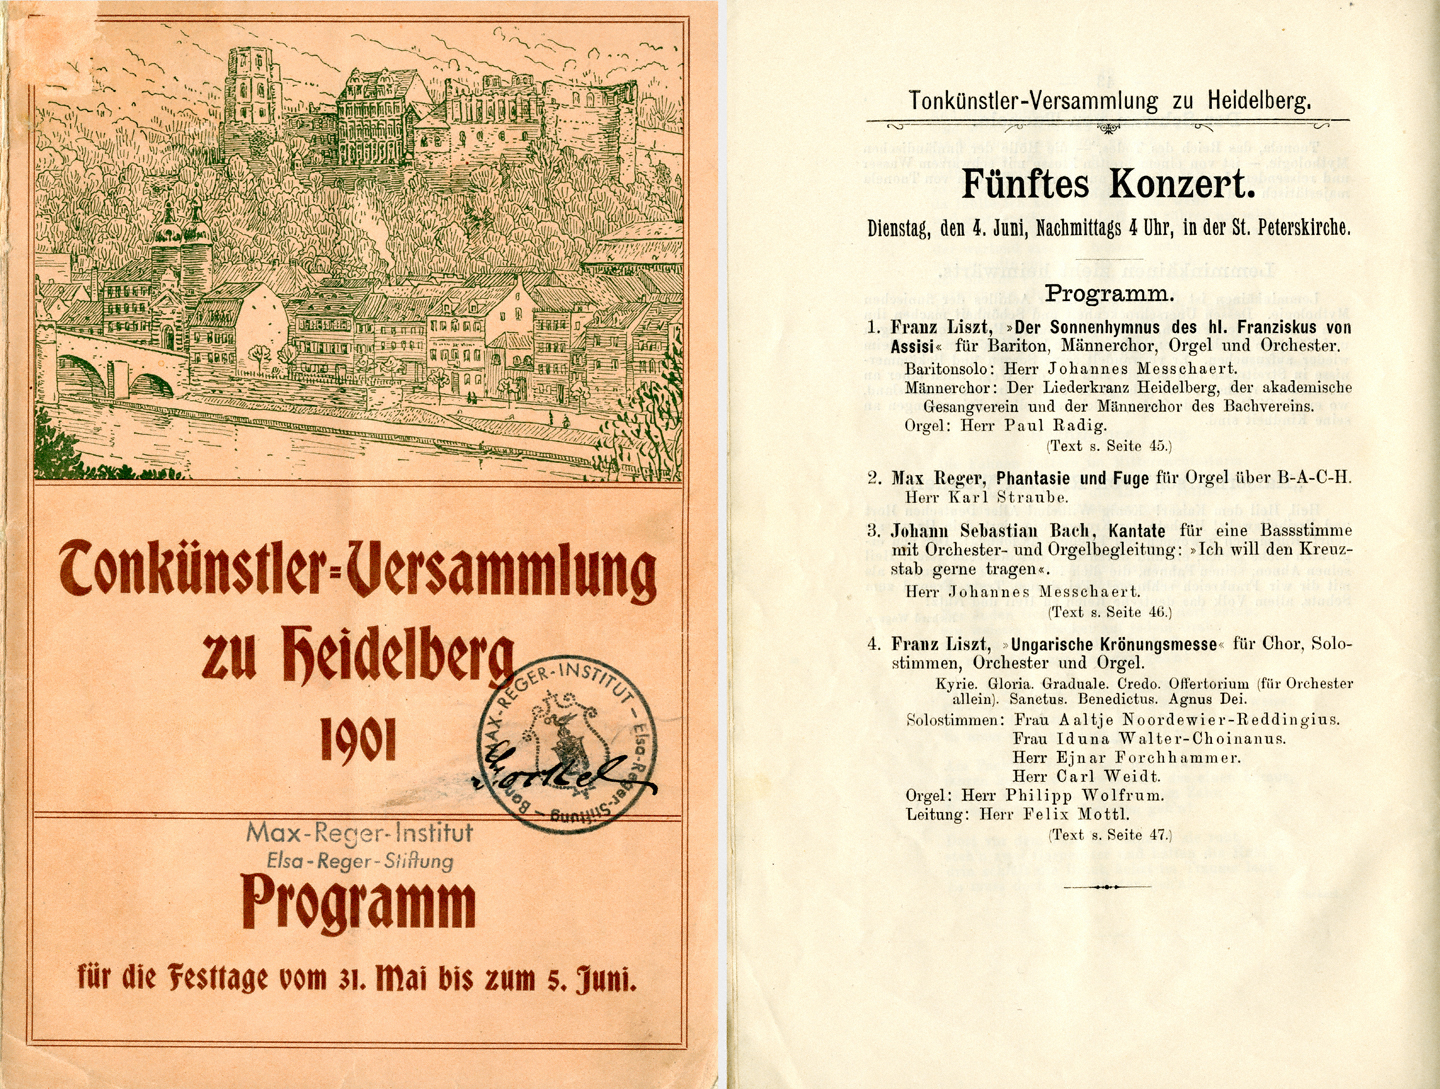 Programmheft zur Tonkünstlerversammlung in Heidelberg 1901, Titelblatt und S. 44. – Max-Reger-Institut, Karlsruhe.